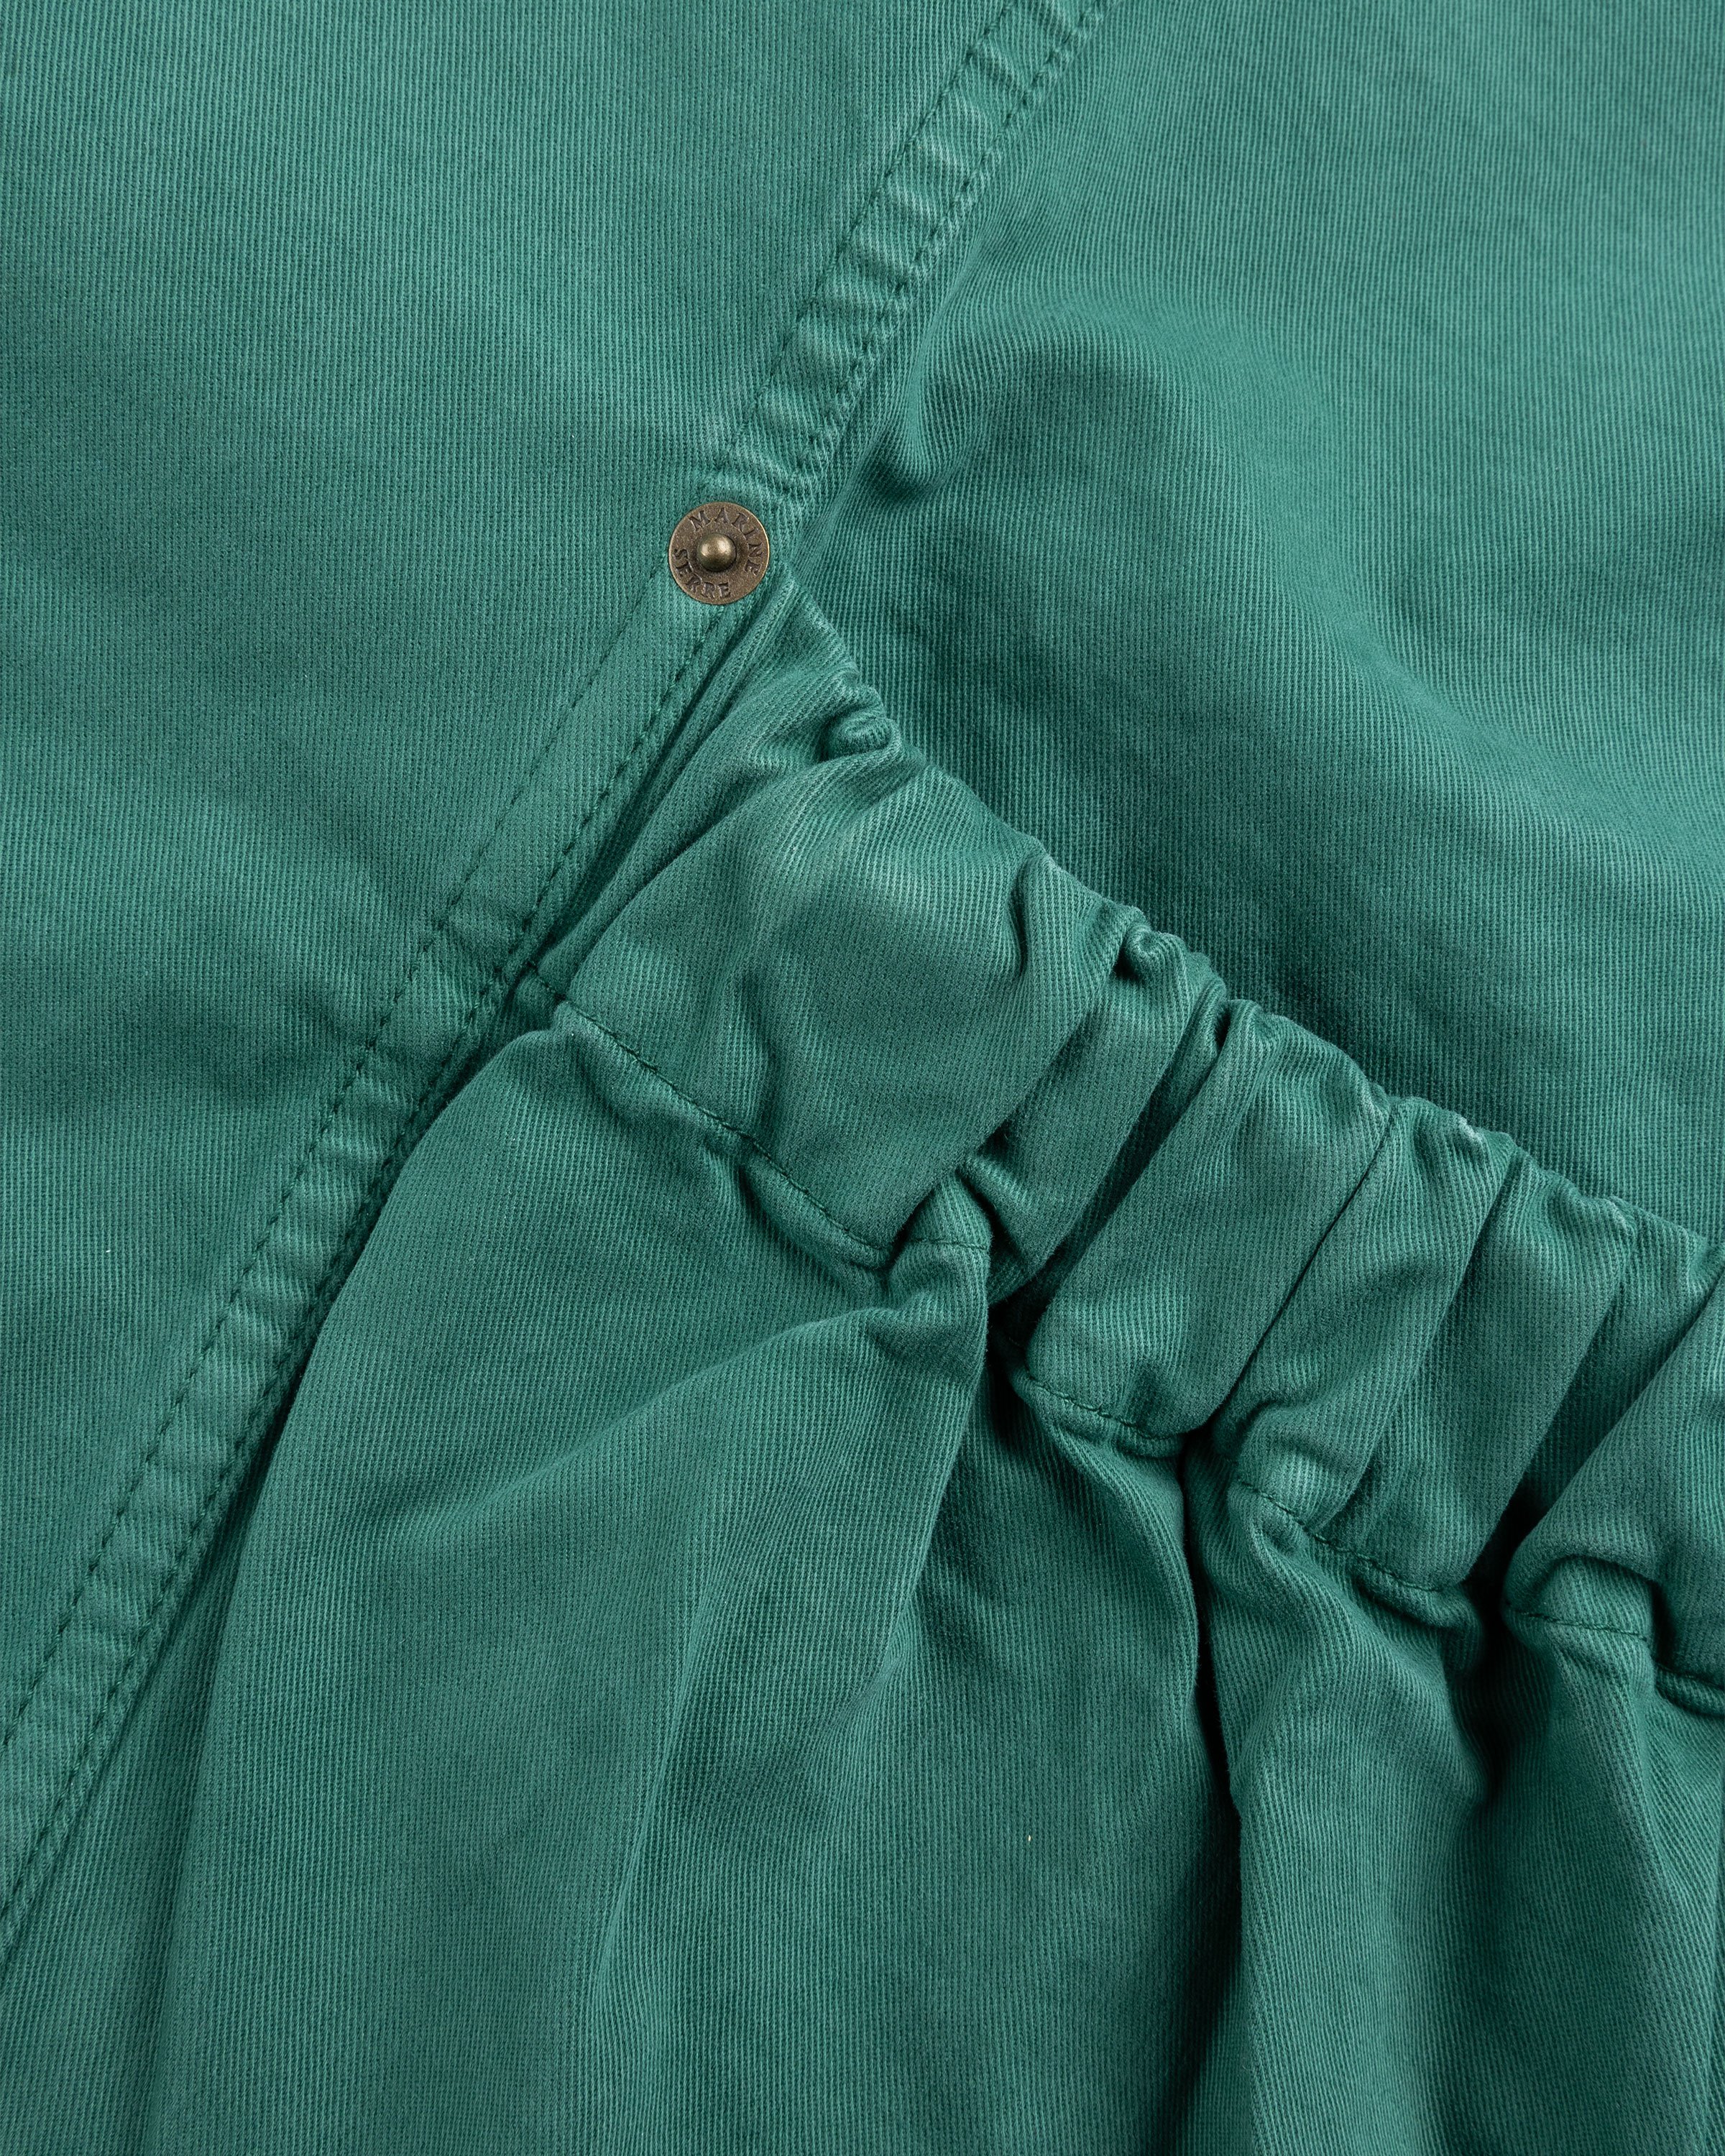 Marine Serre - Workwear Jacket Evergreen - Clothing - Green - Image 7